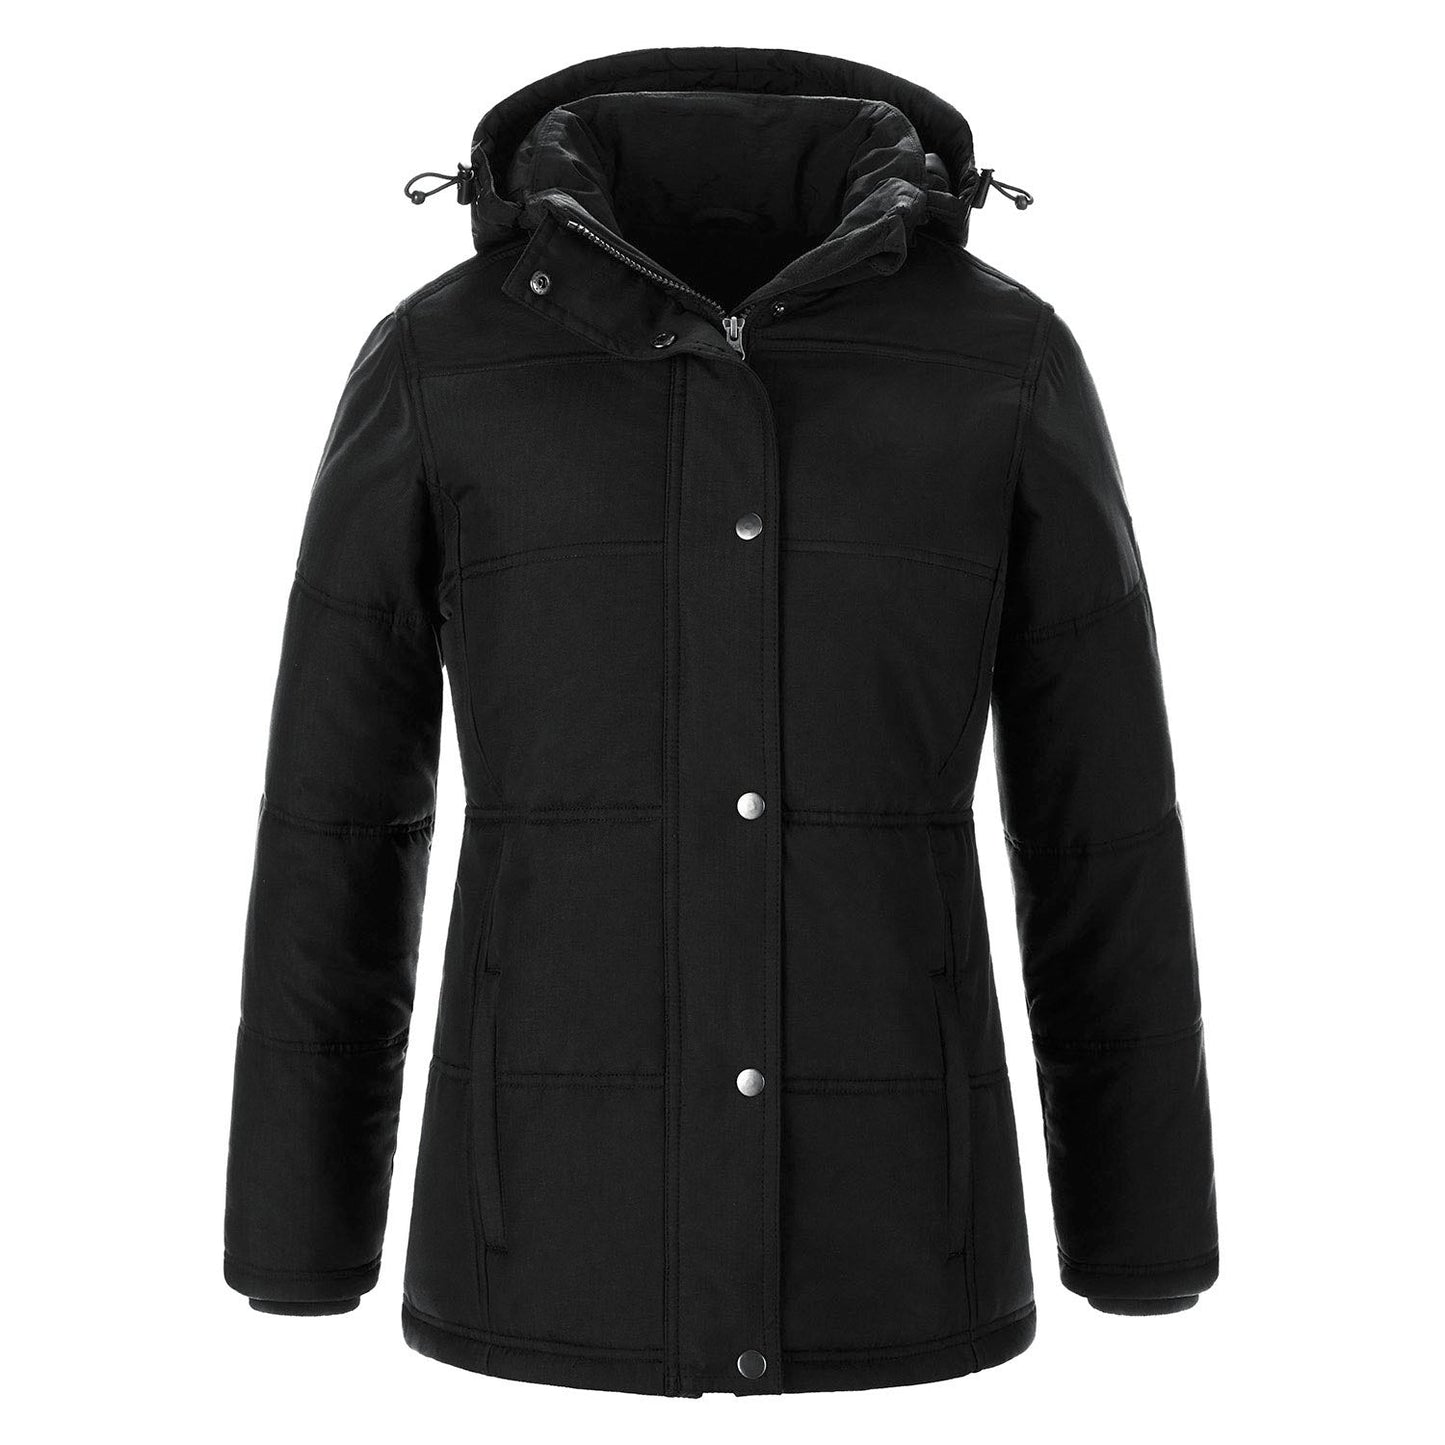 L06026 - Nunavut Ladies Puffy Coat Black / XS Jacket